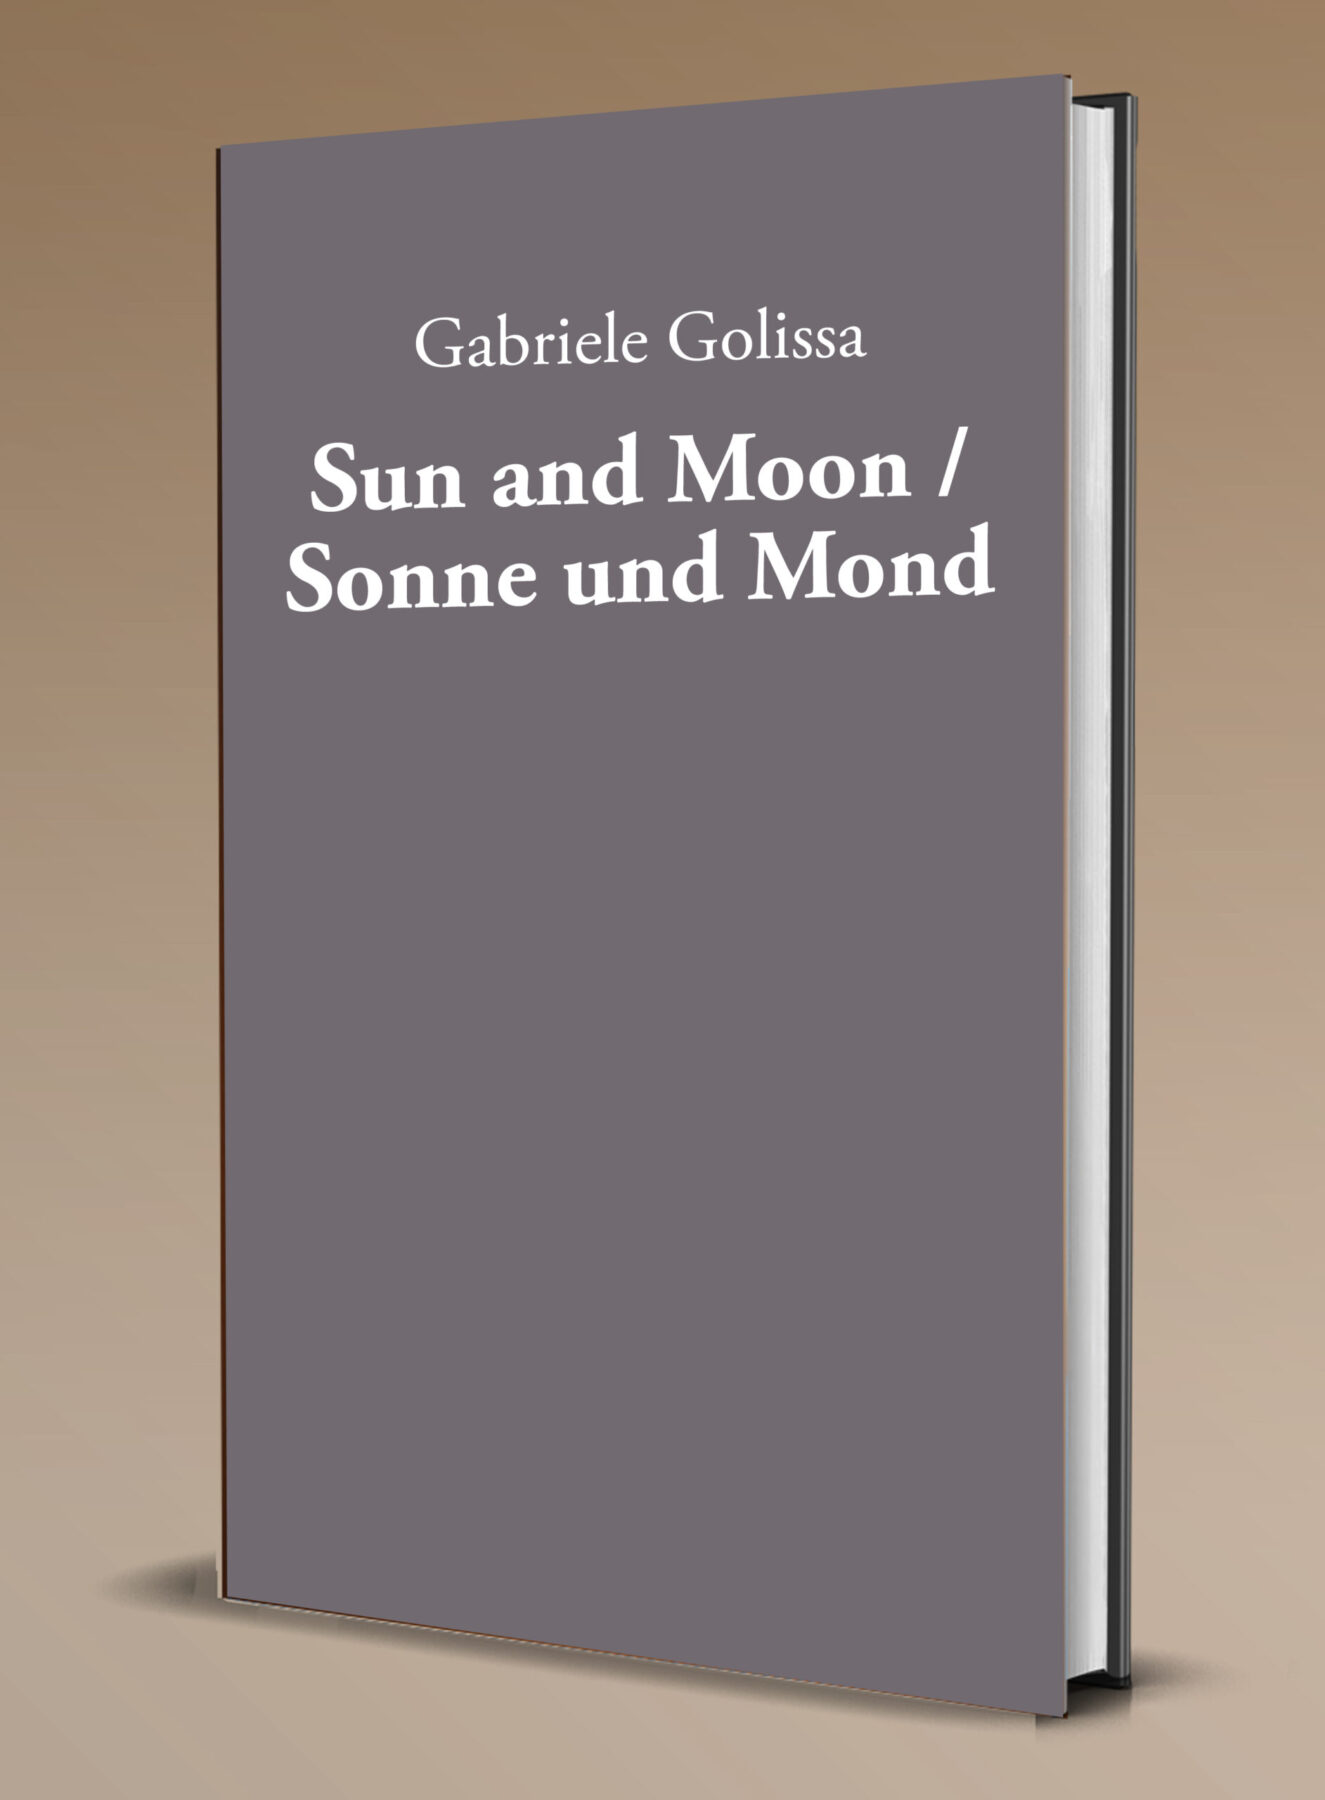 'Sun and Moon / Sonne und Mond' by Gabriele Golissa